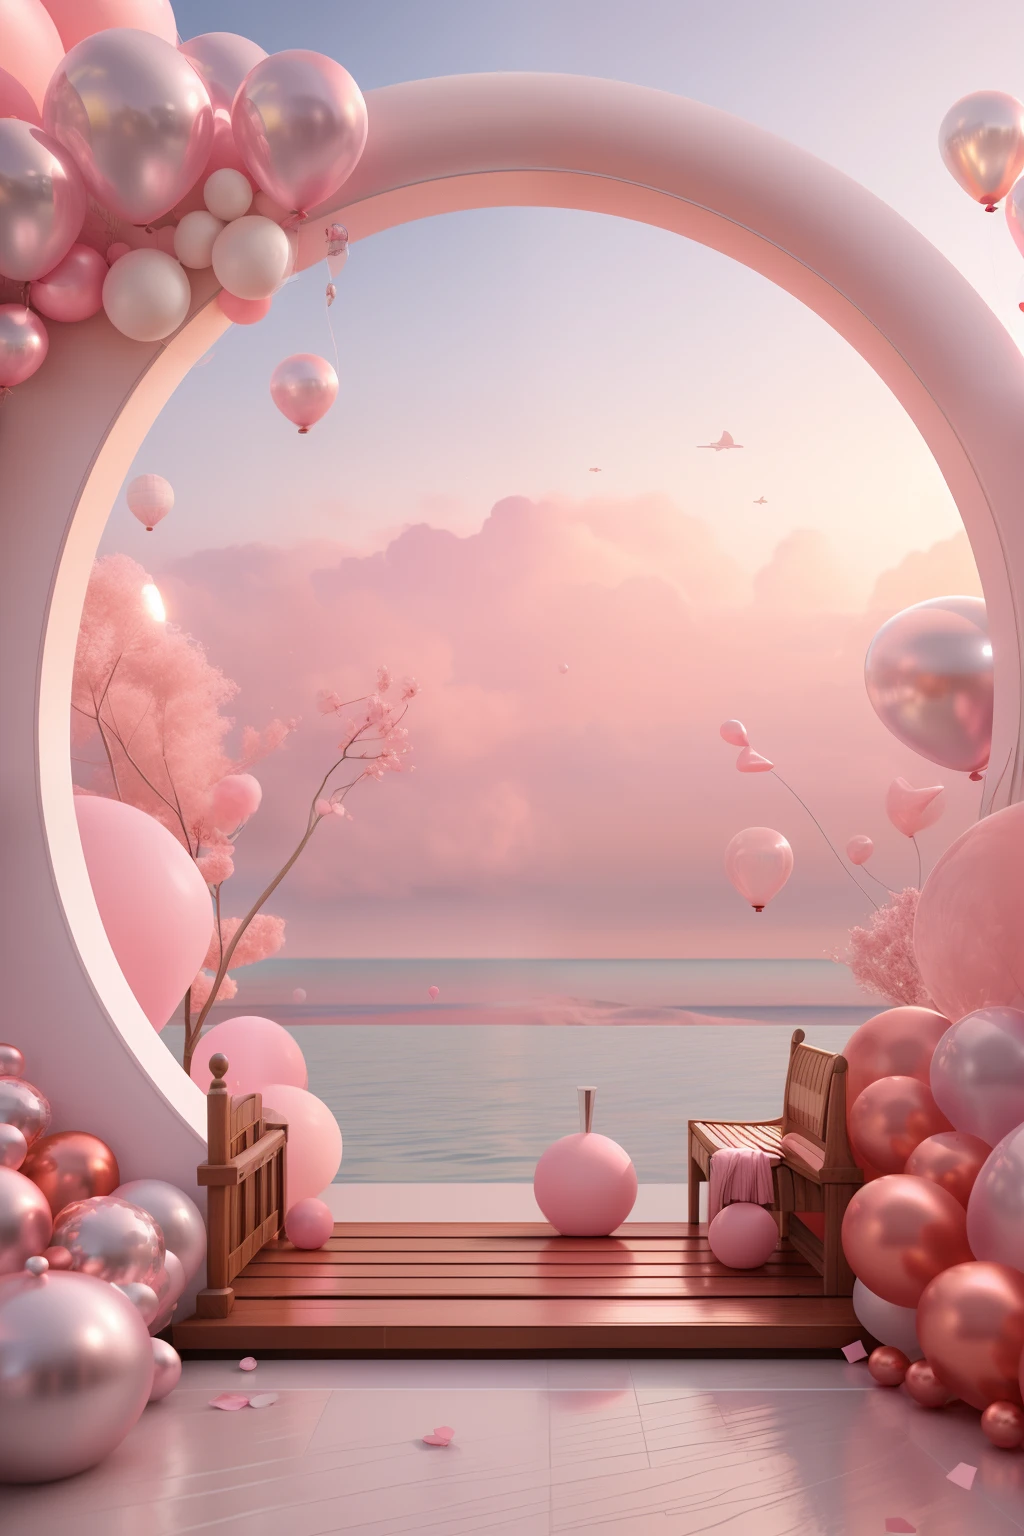 Il y a une arche rose et blanche，Avec des ballons et des bancs, style zen rose, paysage rose, scènes de rêve, regardant un océan rose, Rendu 3D stylisé, Rendu 3D stylisé, rendu 3D surréaliste, paysage pétillant, Paysage de rêve surréaliste, Scène stylisée en 3D, Stylisé comme un rendu 3D, atmosphère de rêve et drame